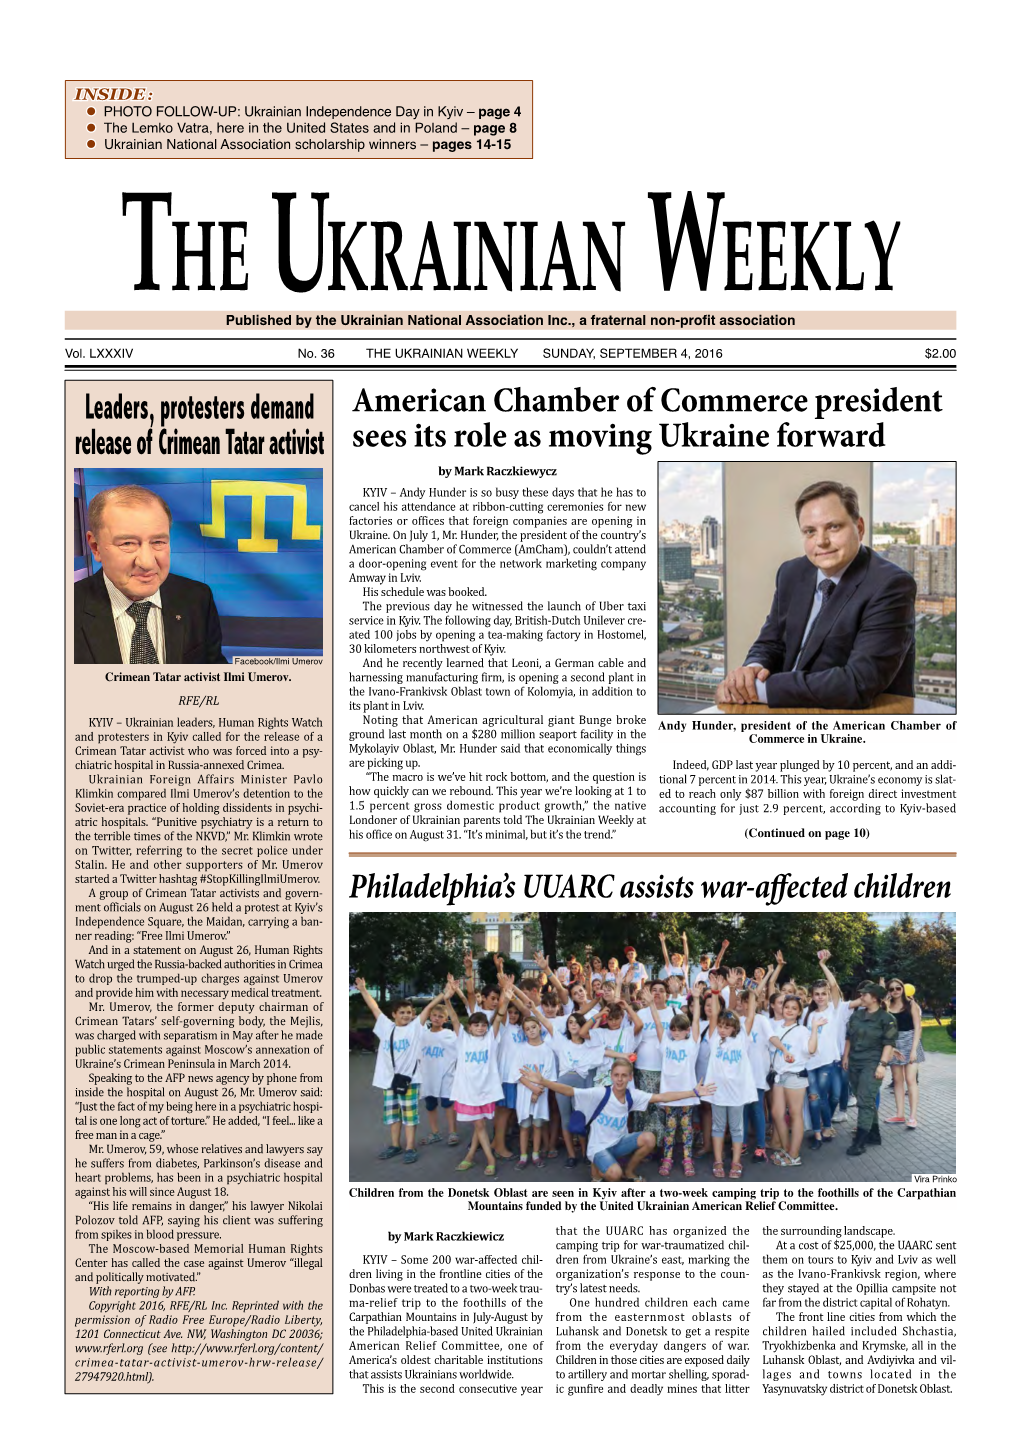 The Ukrainian Weekly, 2016